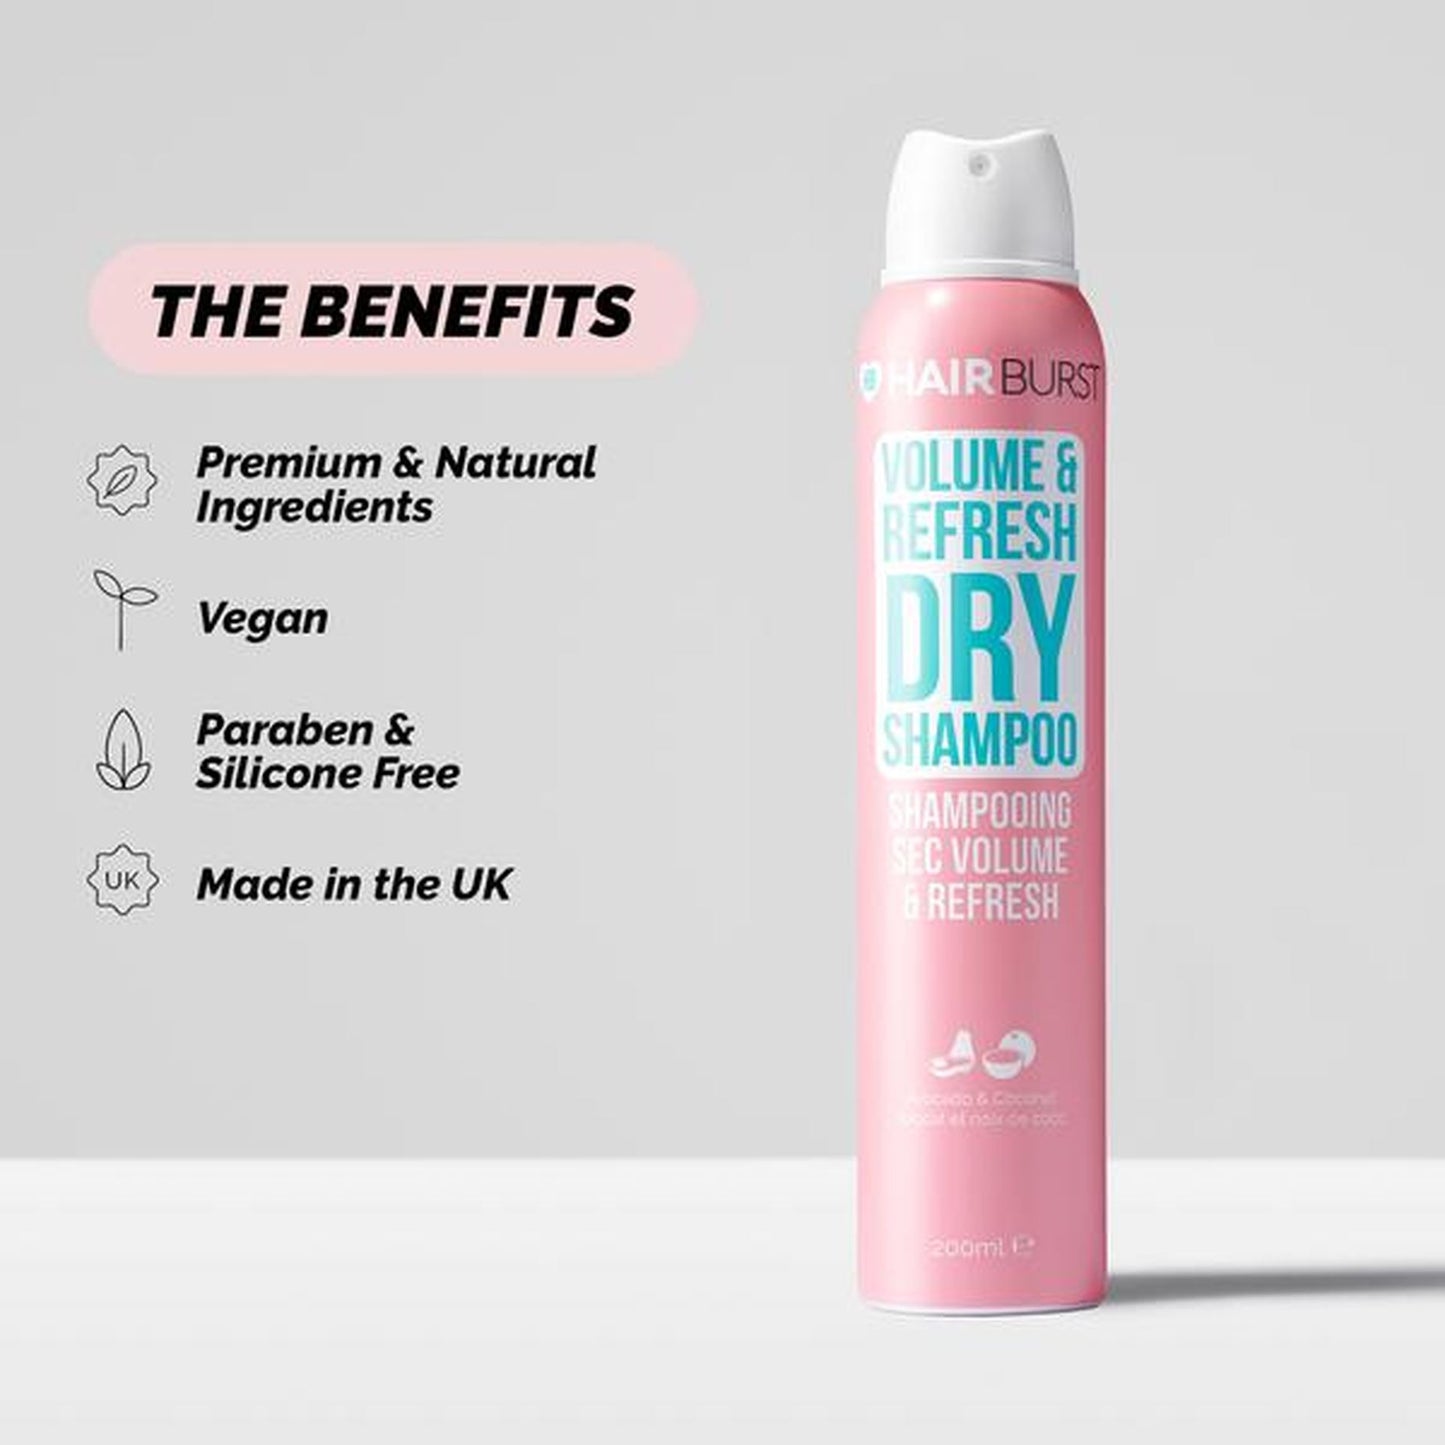 Hairburst Volume & Refresh Dry Shampoo 200ml